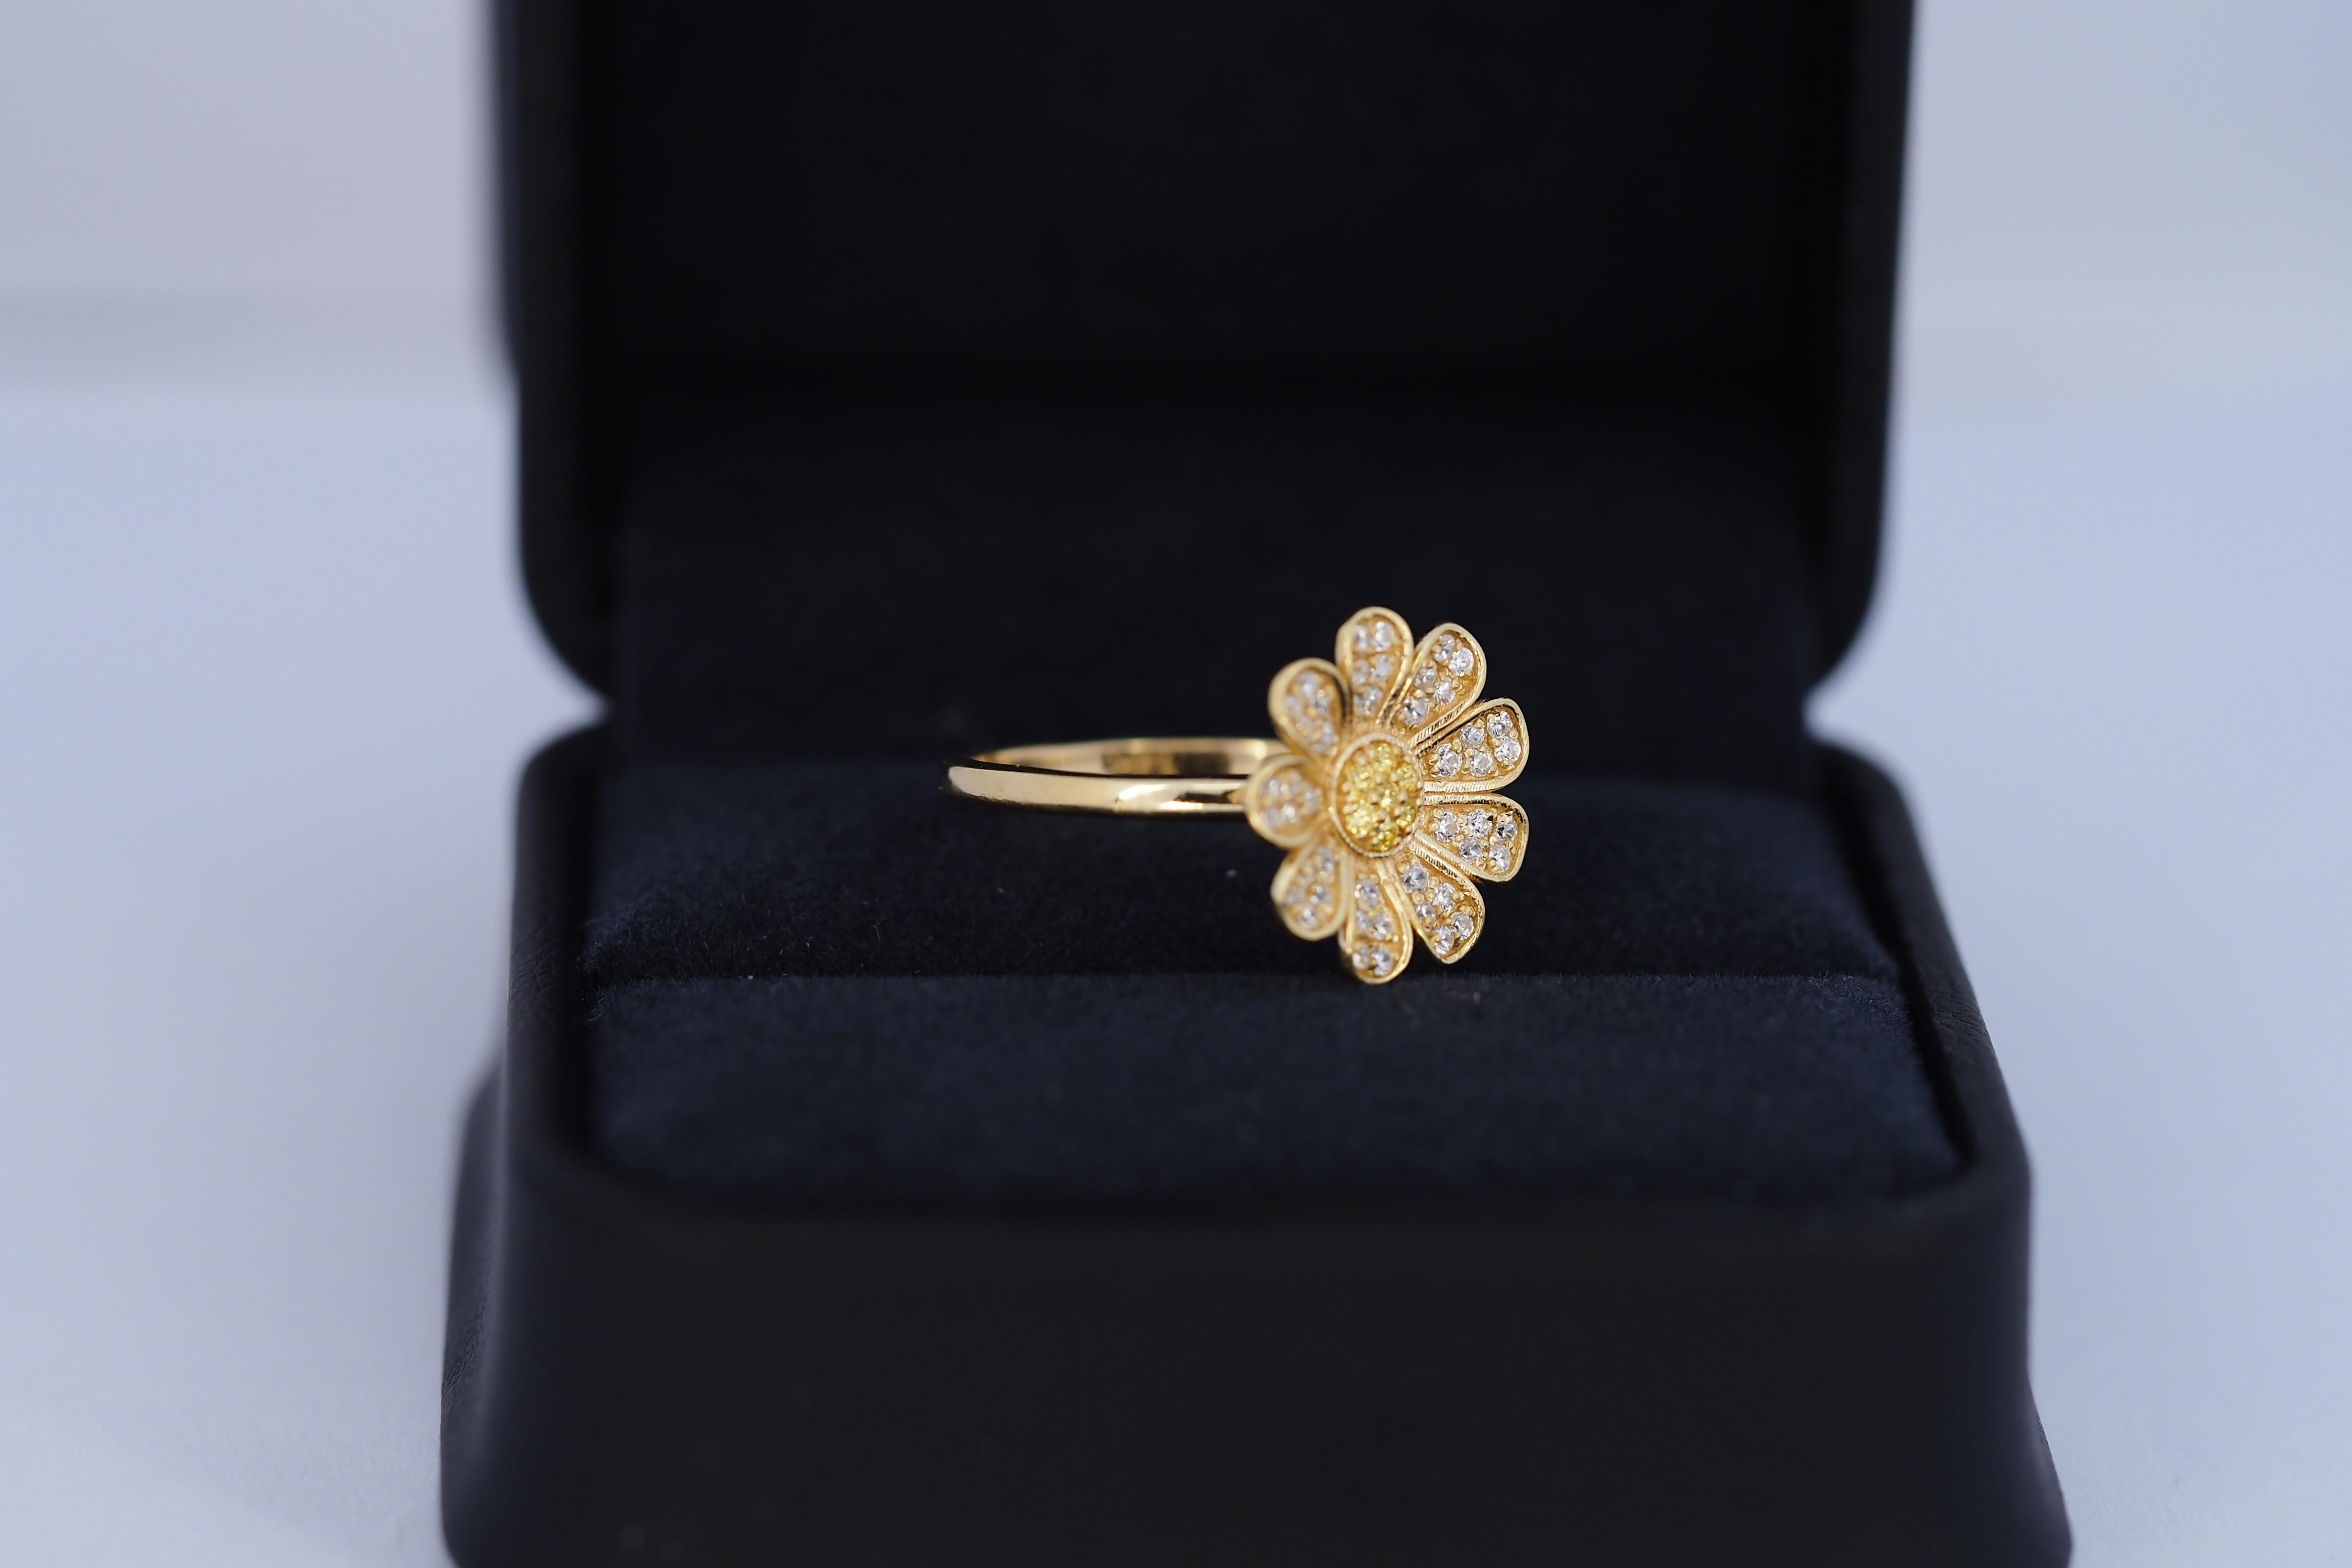 For Sale:  Daisy flower 14k gold ring.  4